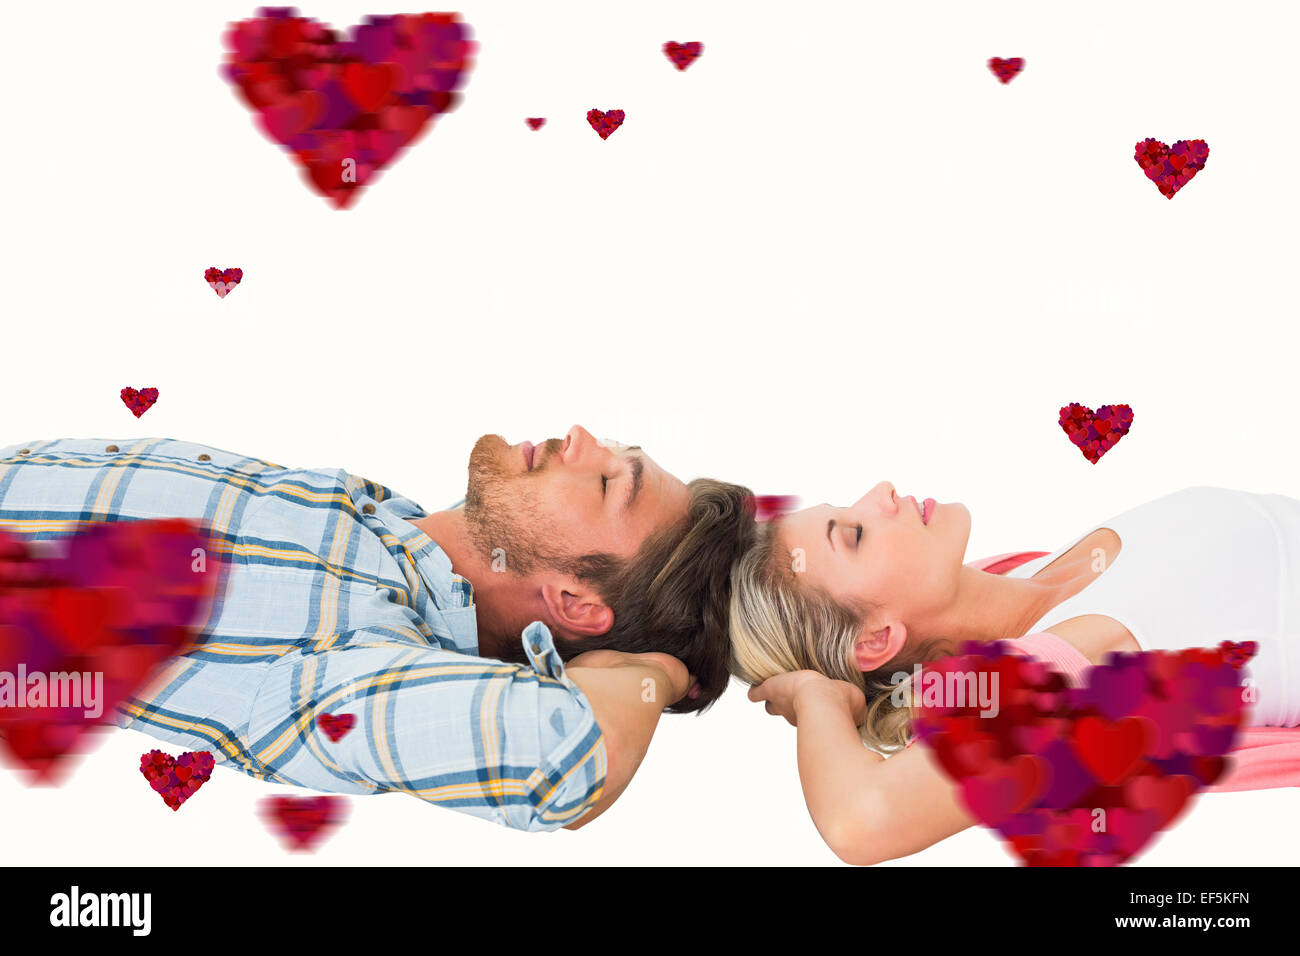 Immagine composita di attraente coppia giovane dormire serenamente Foto Stock